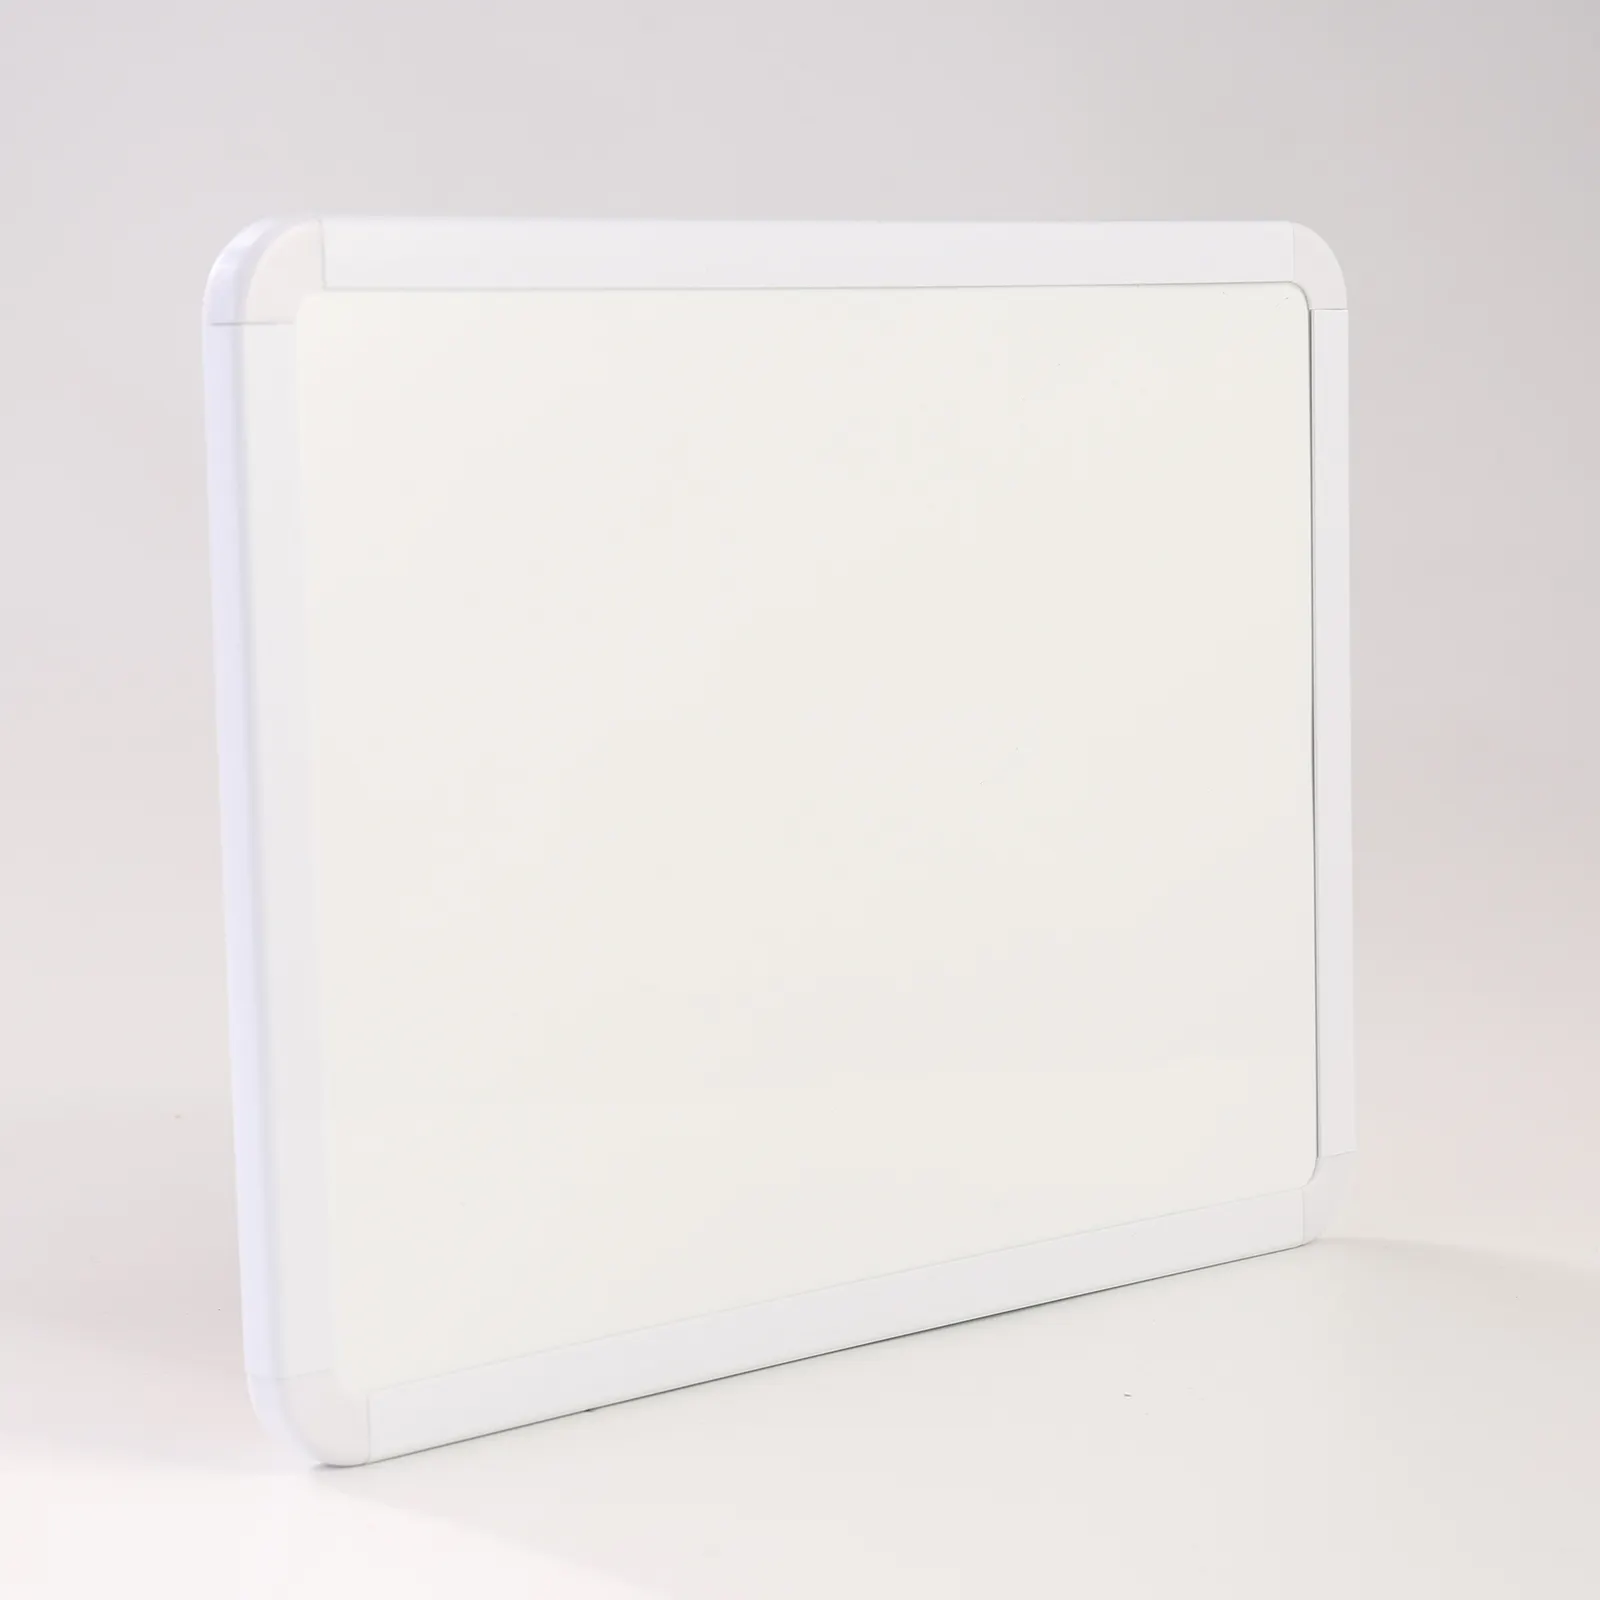 Mini masaüstü beyaz tahta temelleri küçük beyaz tahta işaretleyici ve mıknatıslar ile silinebilir taşınabilir kuru silme manyetik yazı tahtası